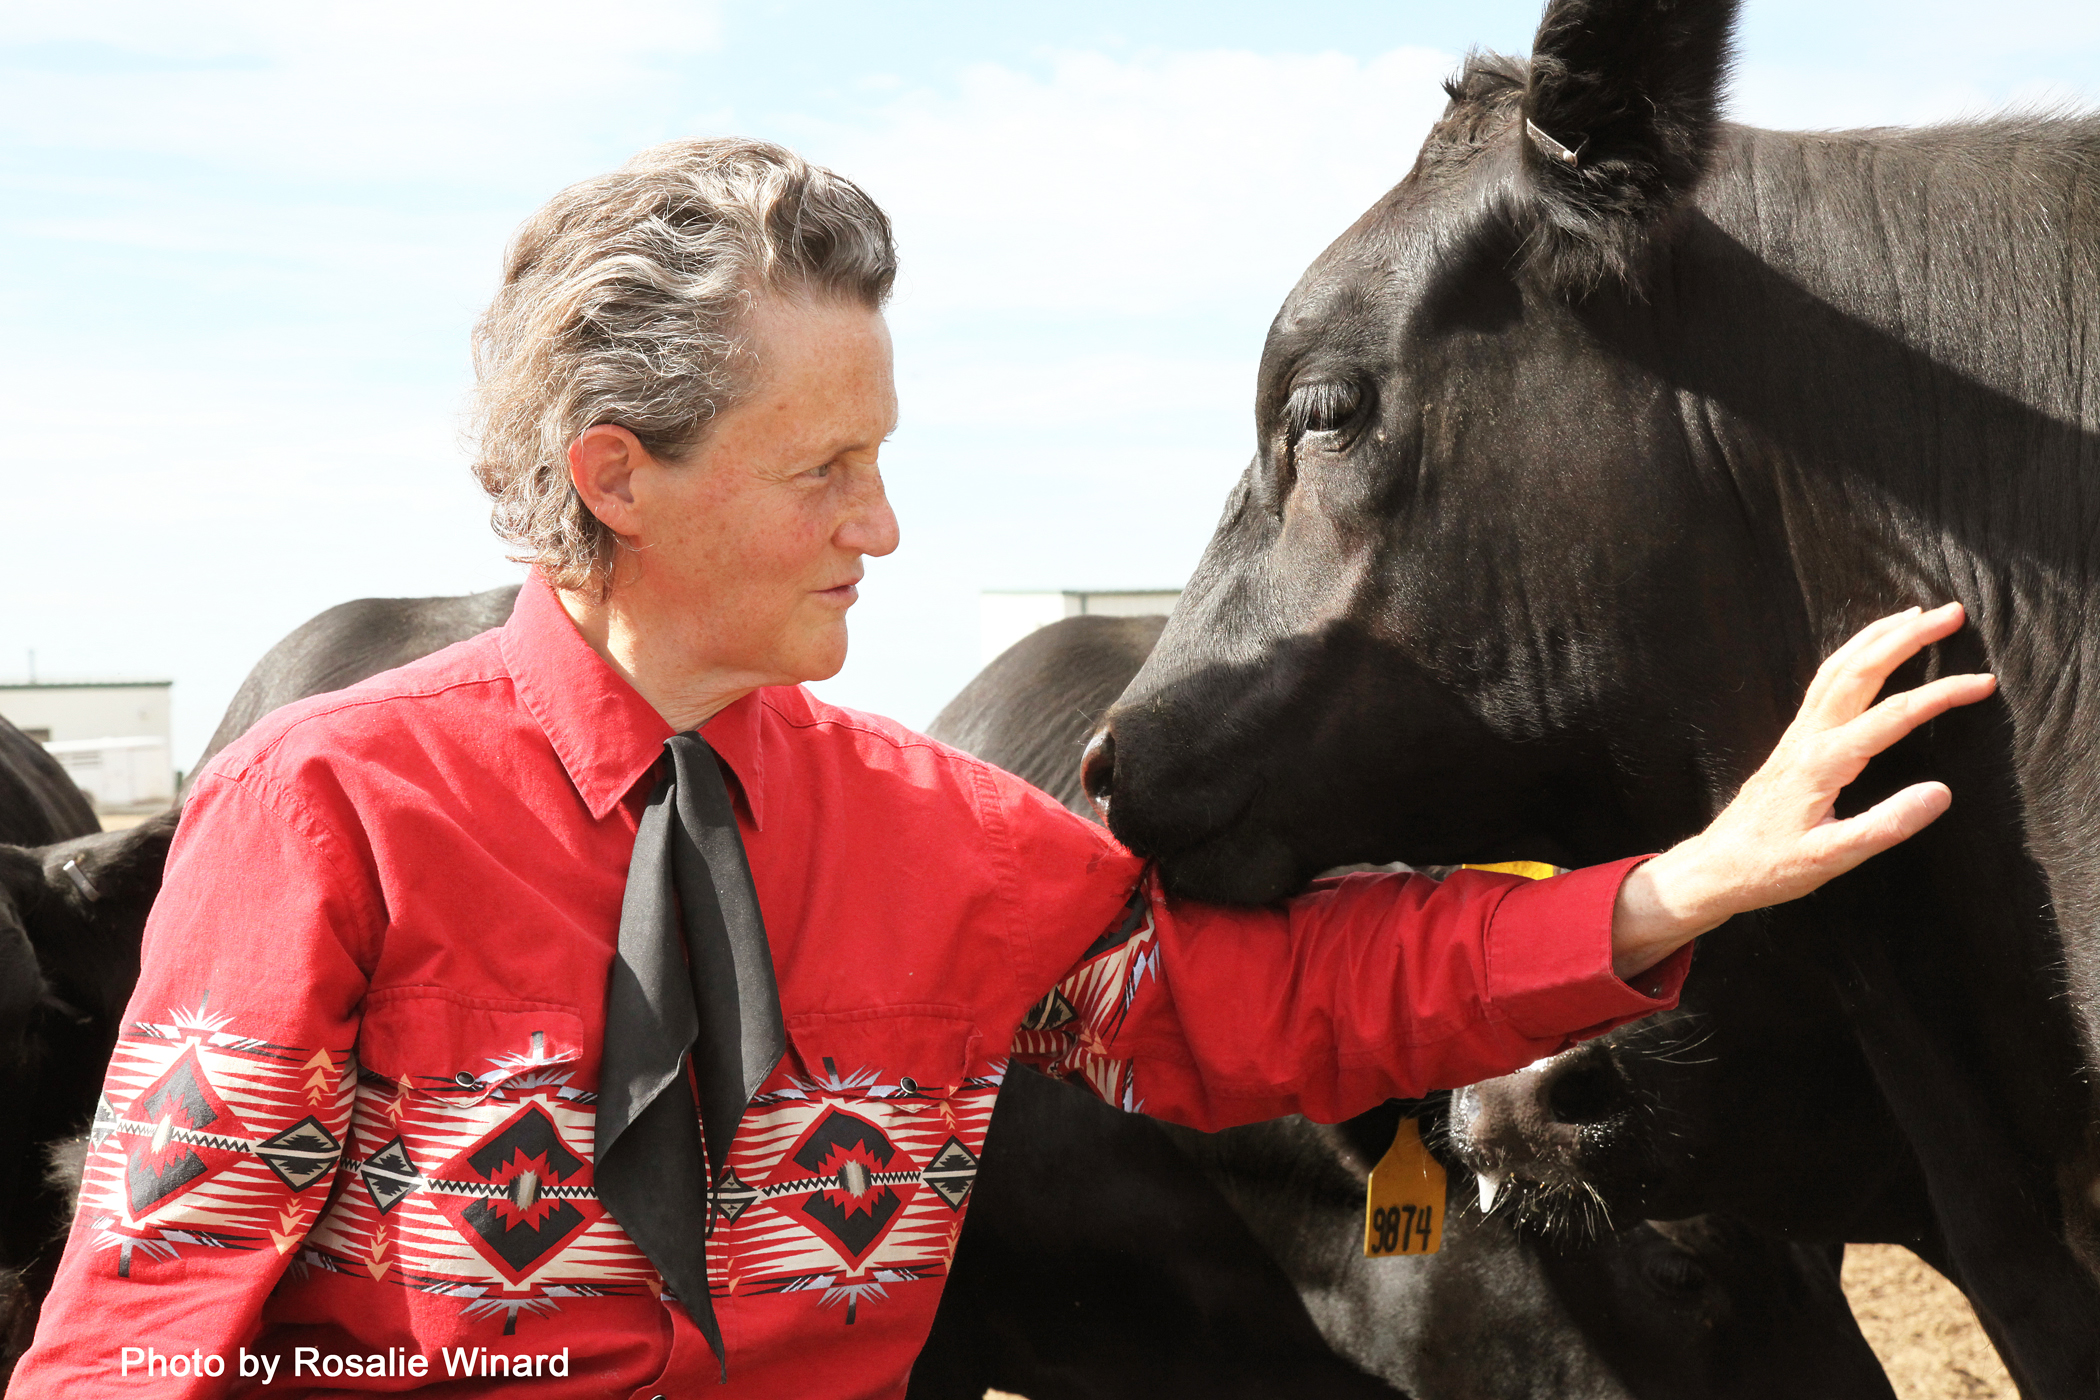 Temple Grandin inventou uma máquina chamada “hug-box”, que a ajudava a acalmar-se e ter menos ansiedade, baseada em suas próprias experiências com estímulos sensoriais.